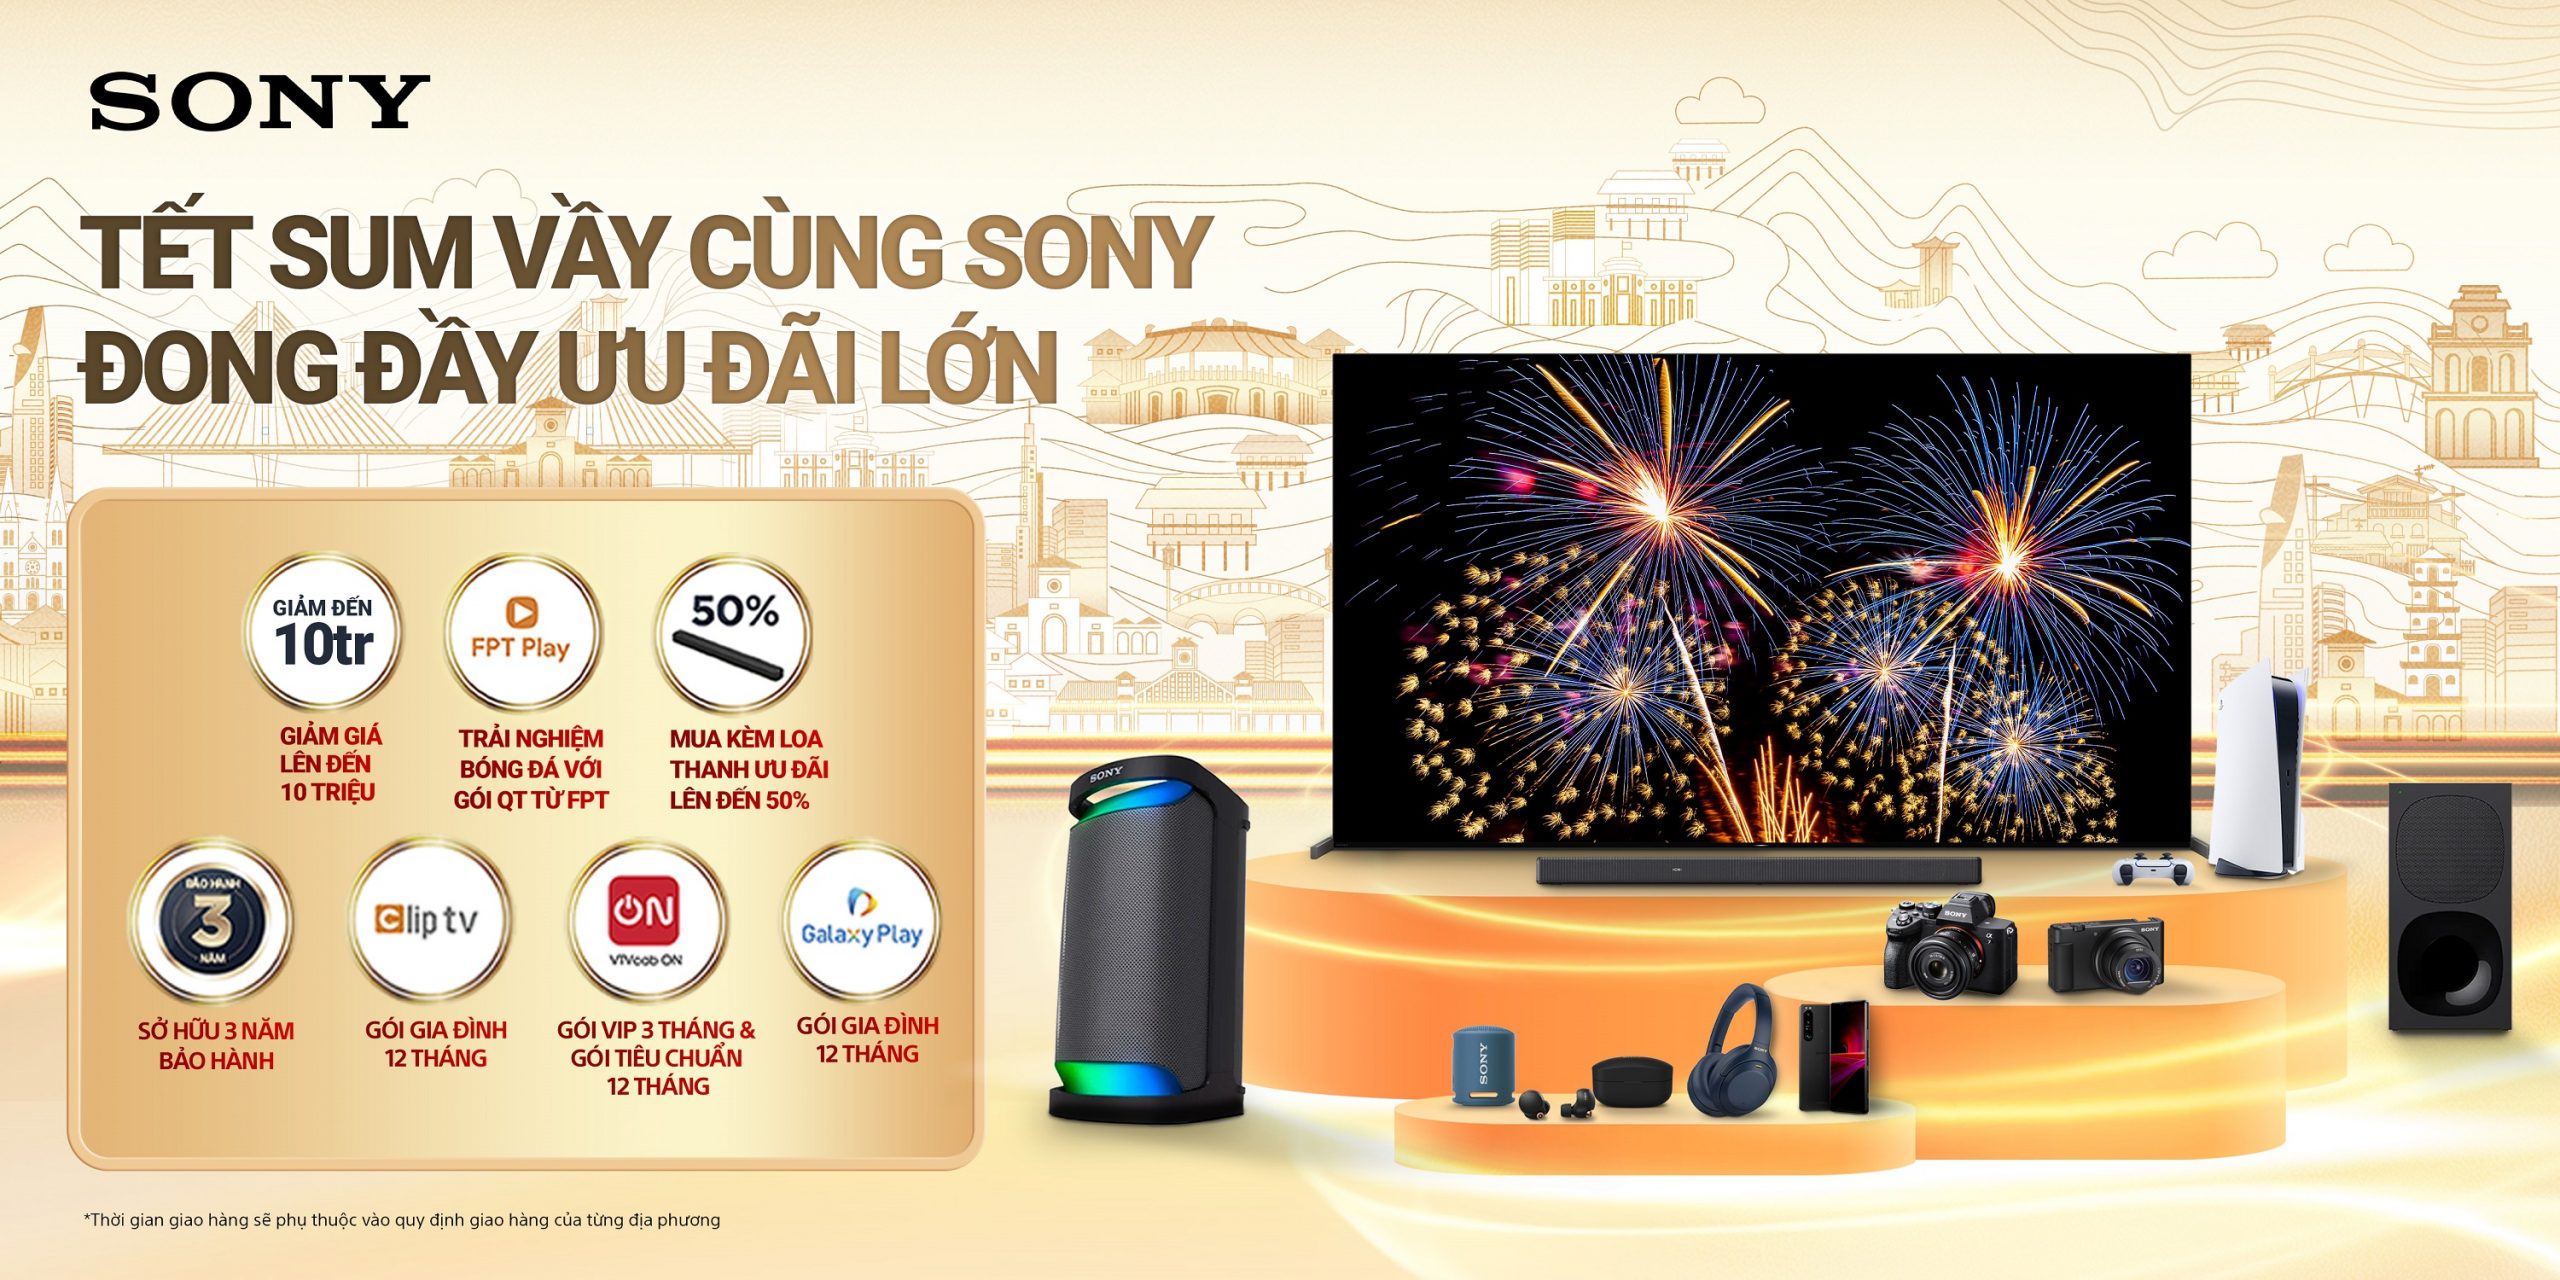 Sony Việt Nam triển khai chương trình khuyến mãi cuối năm:  Tết sum vầy cùng Sony – Đong đầy ưu đãi lớn